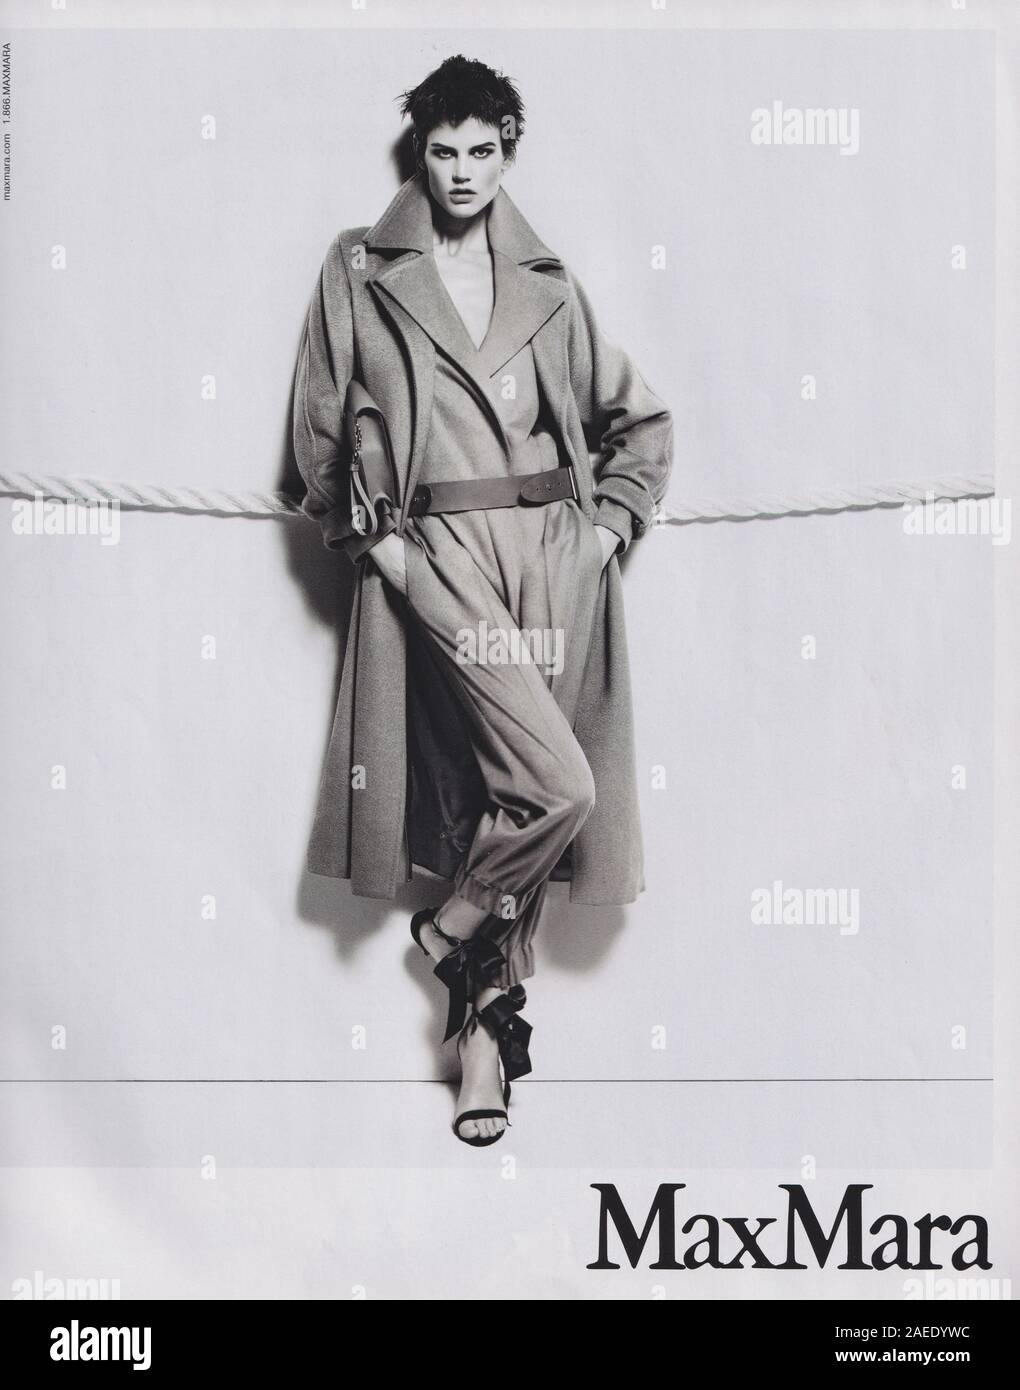 Poster publicitaire Max Mara dans le magazine papier de 2012, publicité, publicité créative MaxMara de 2010 Banque D'Images